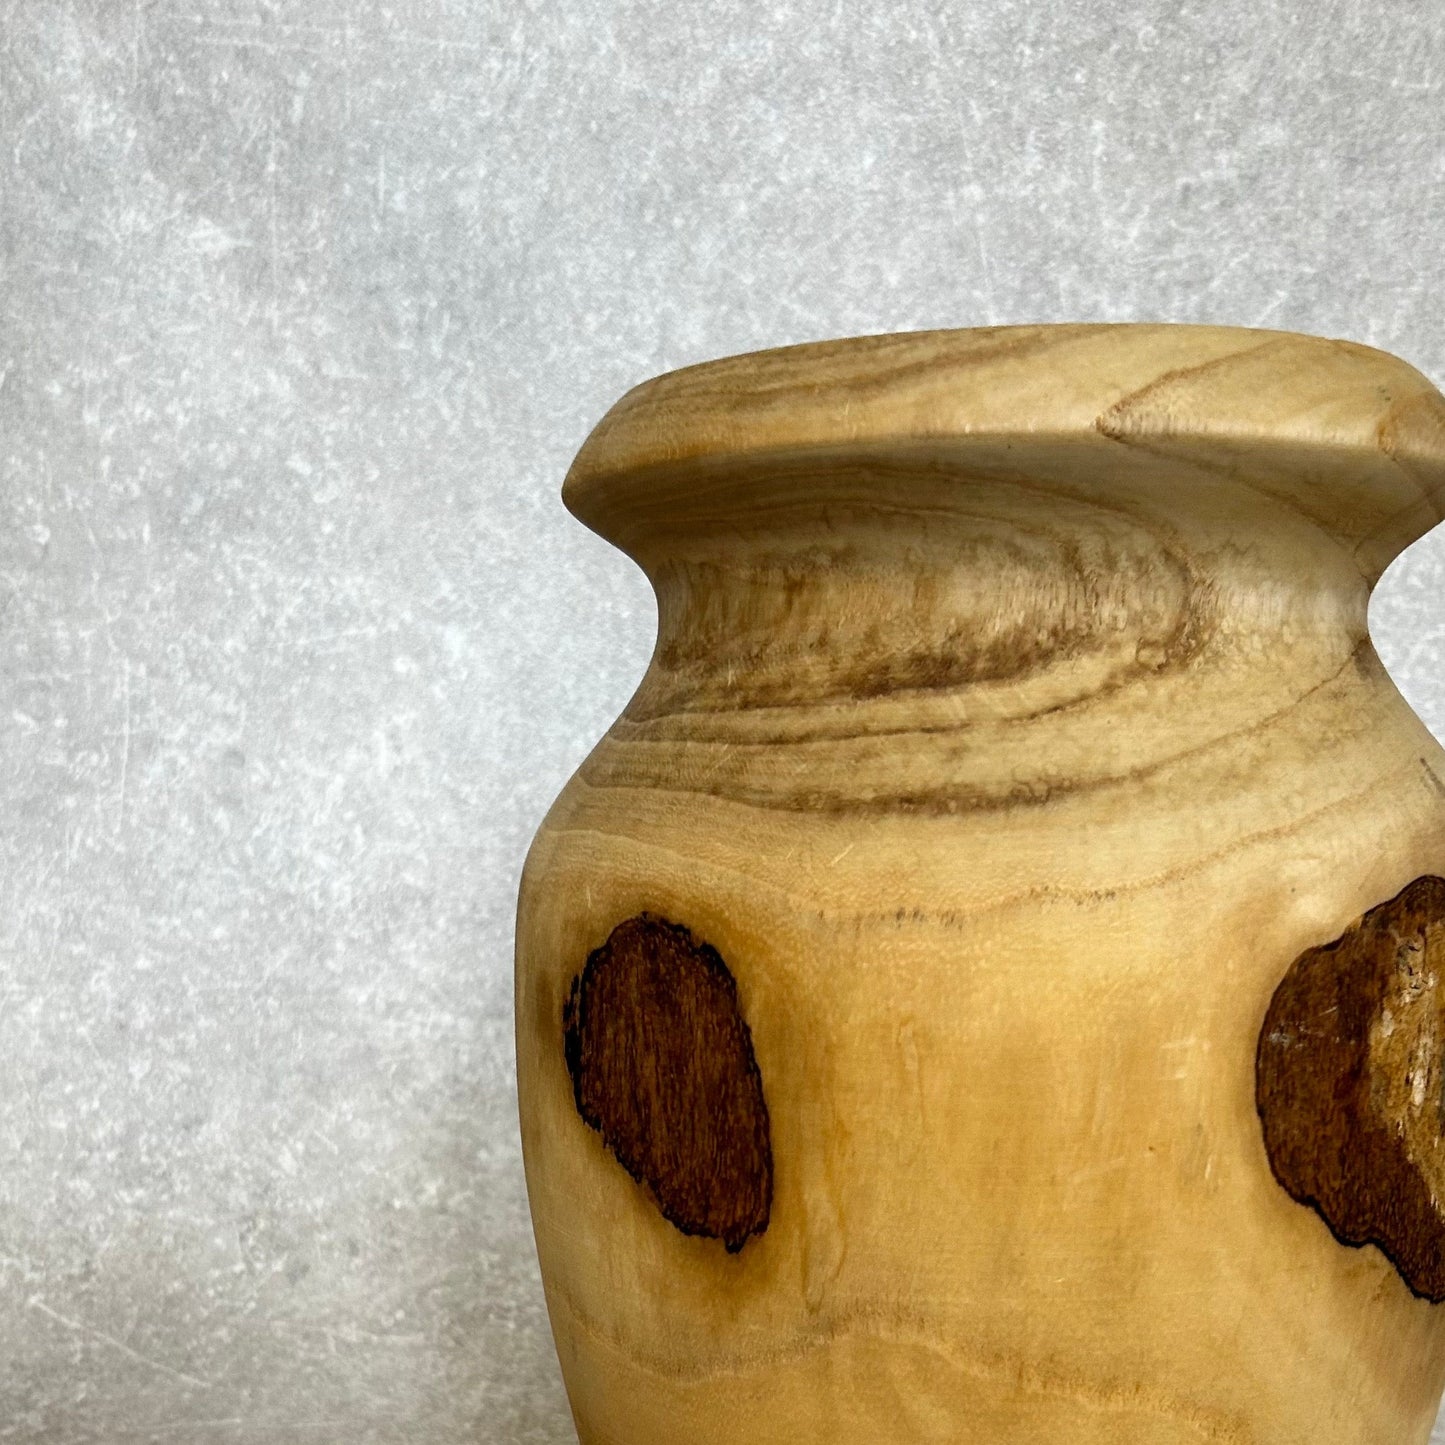 Large Carved Wood Vase